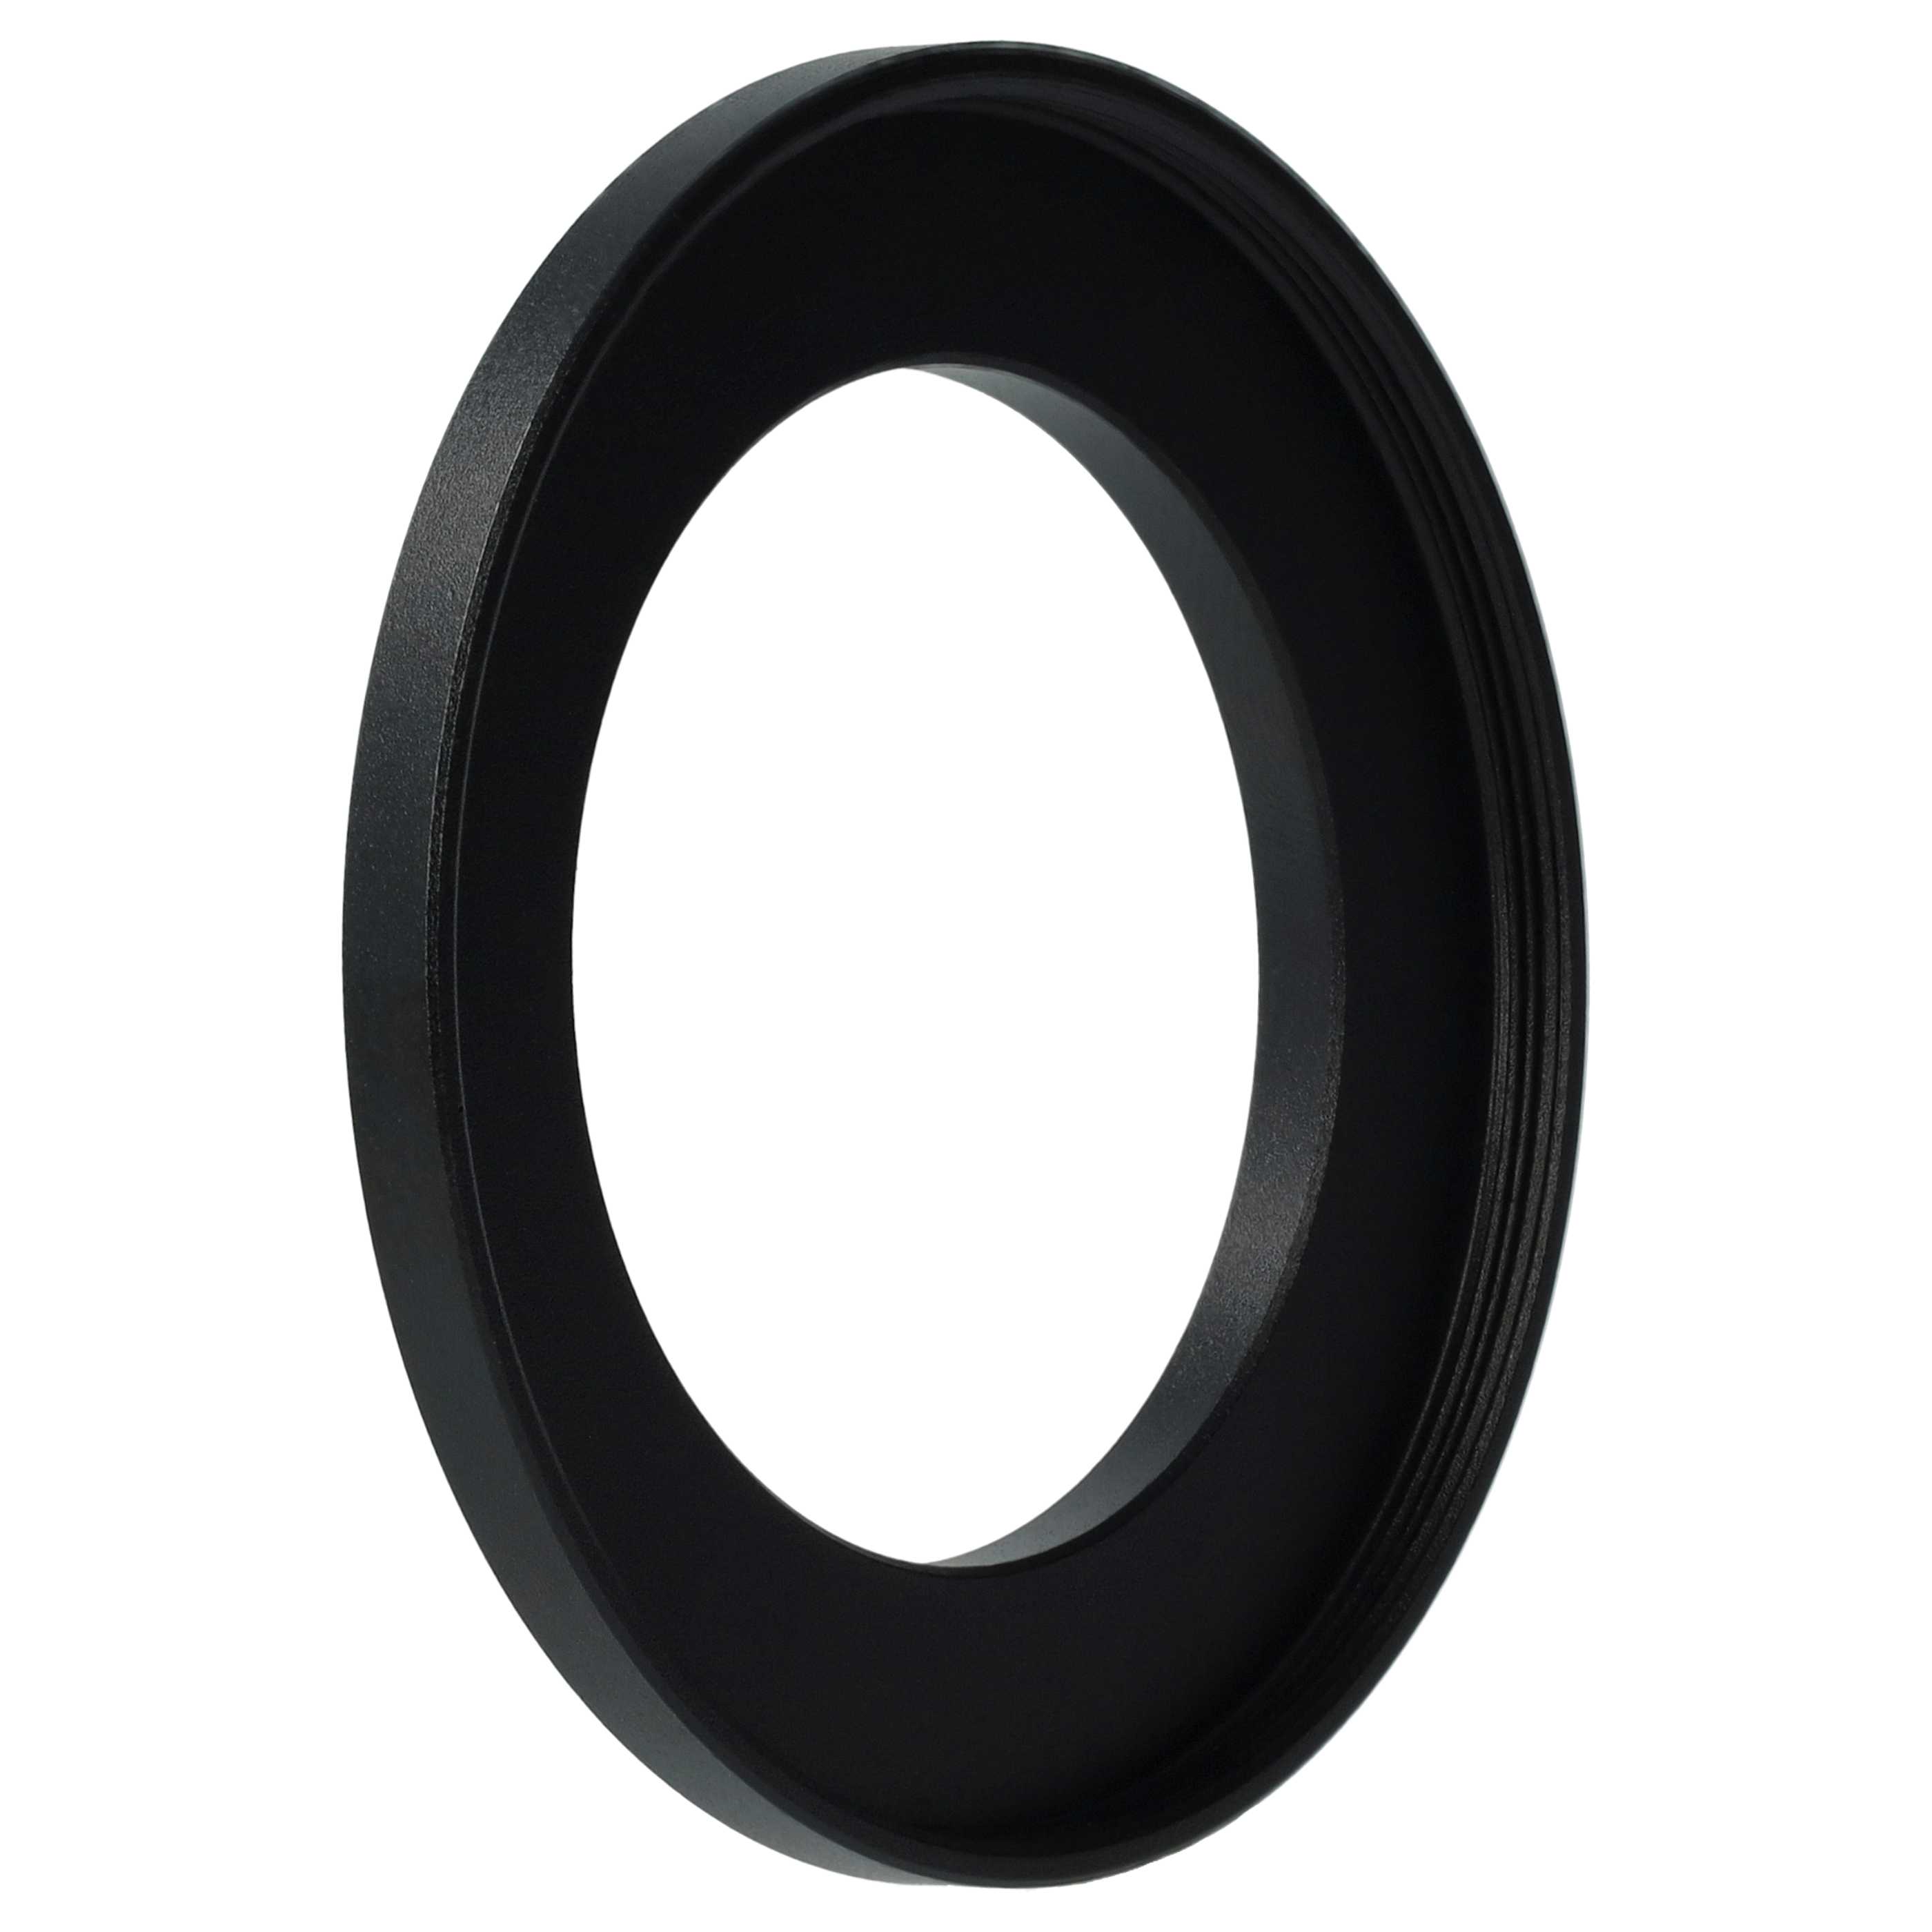 Step-Up-Ring Adapter 40,5 mm auf 55 mm passend für diverse Kamera-Objektive - Filteradapter